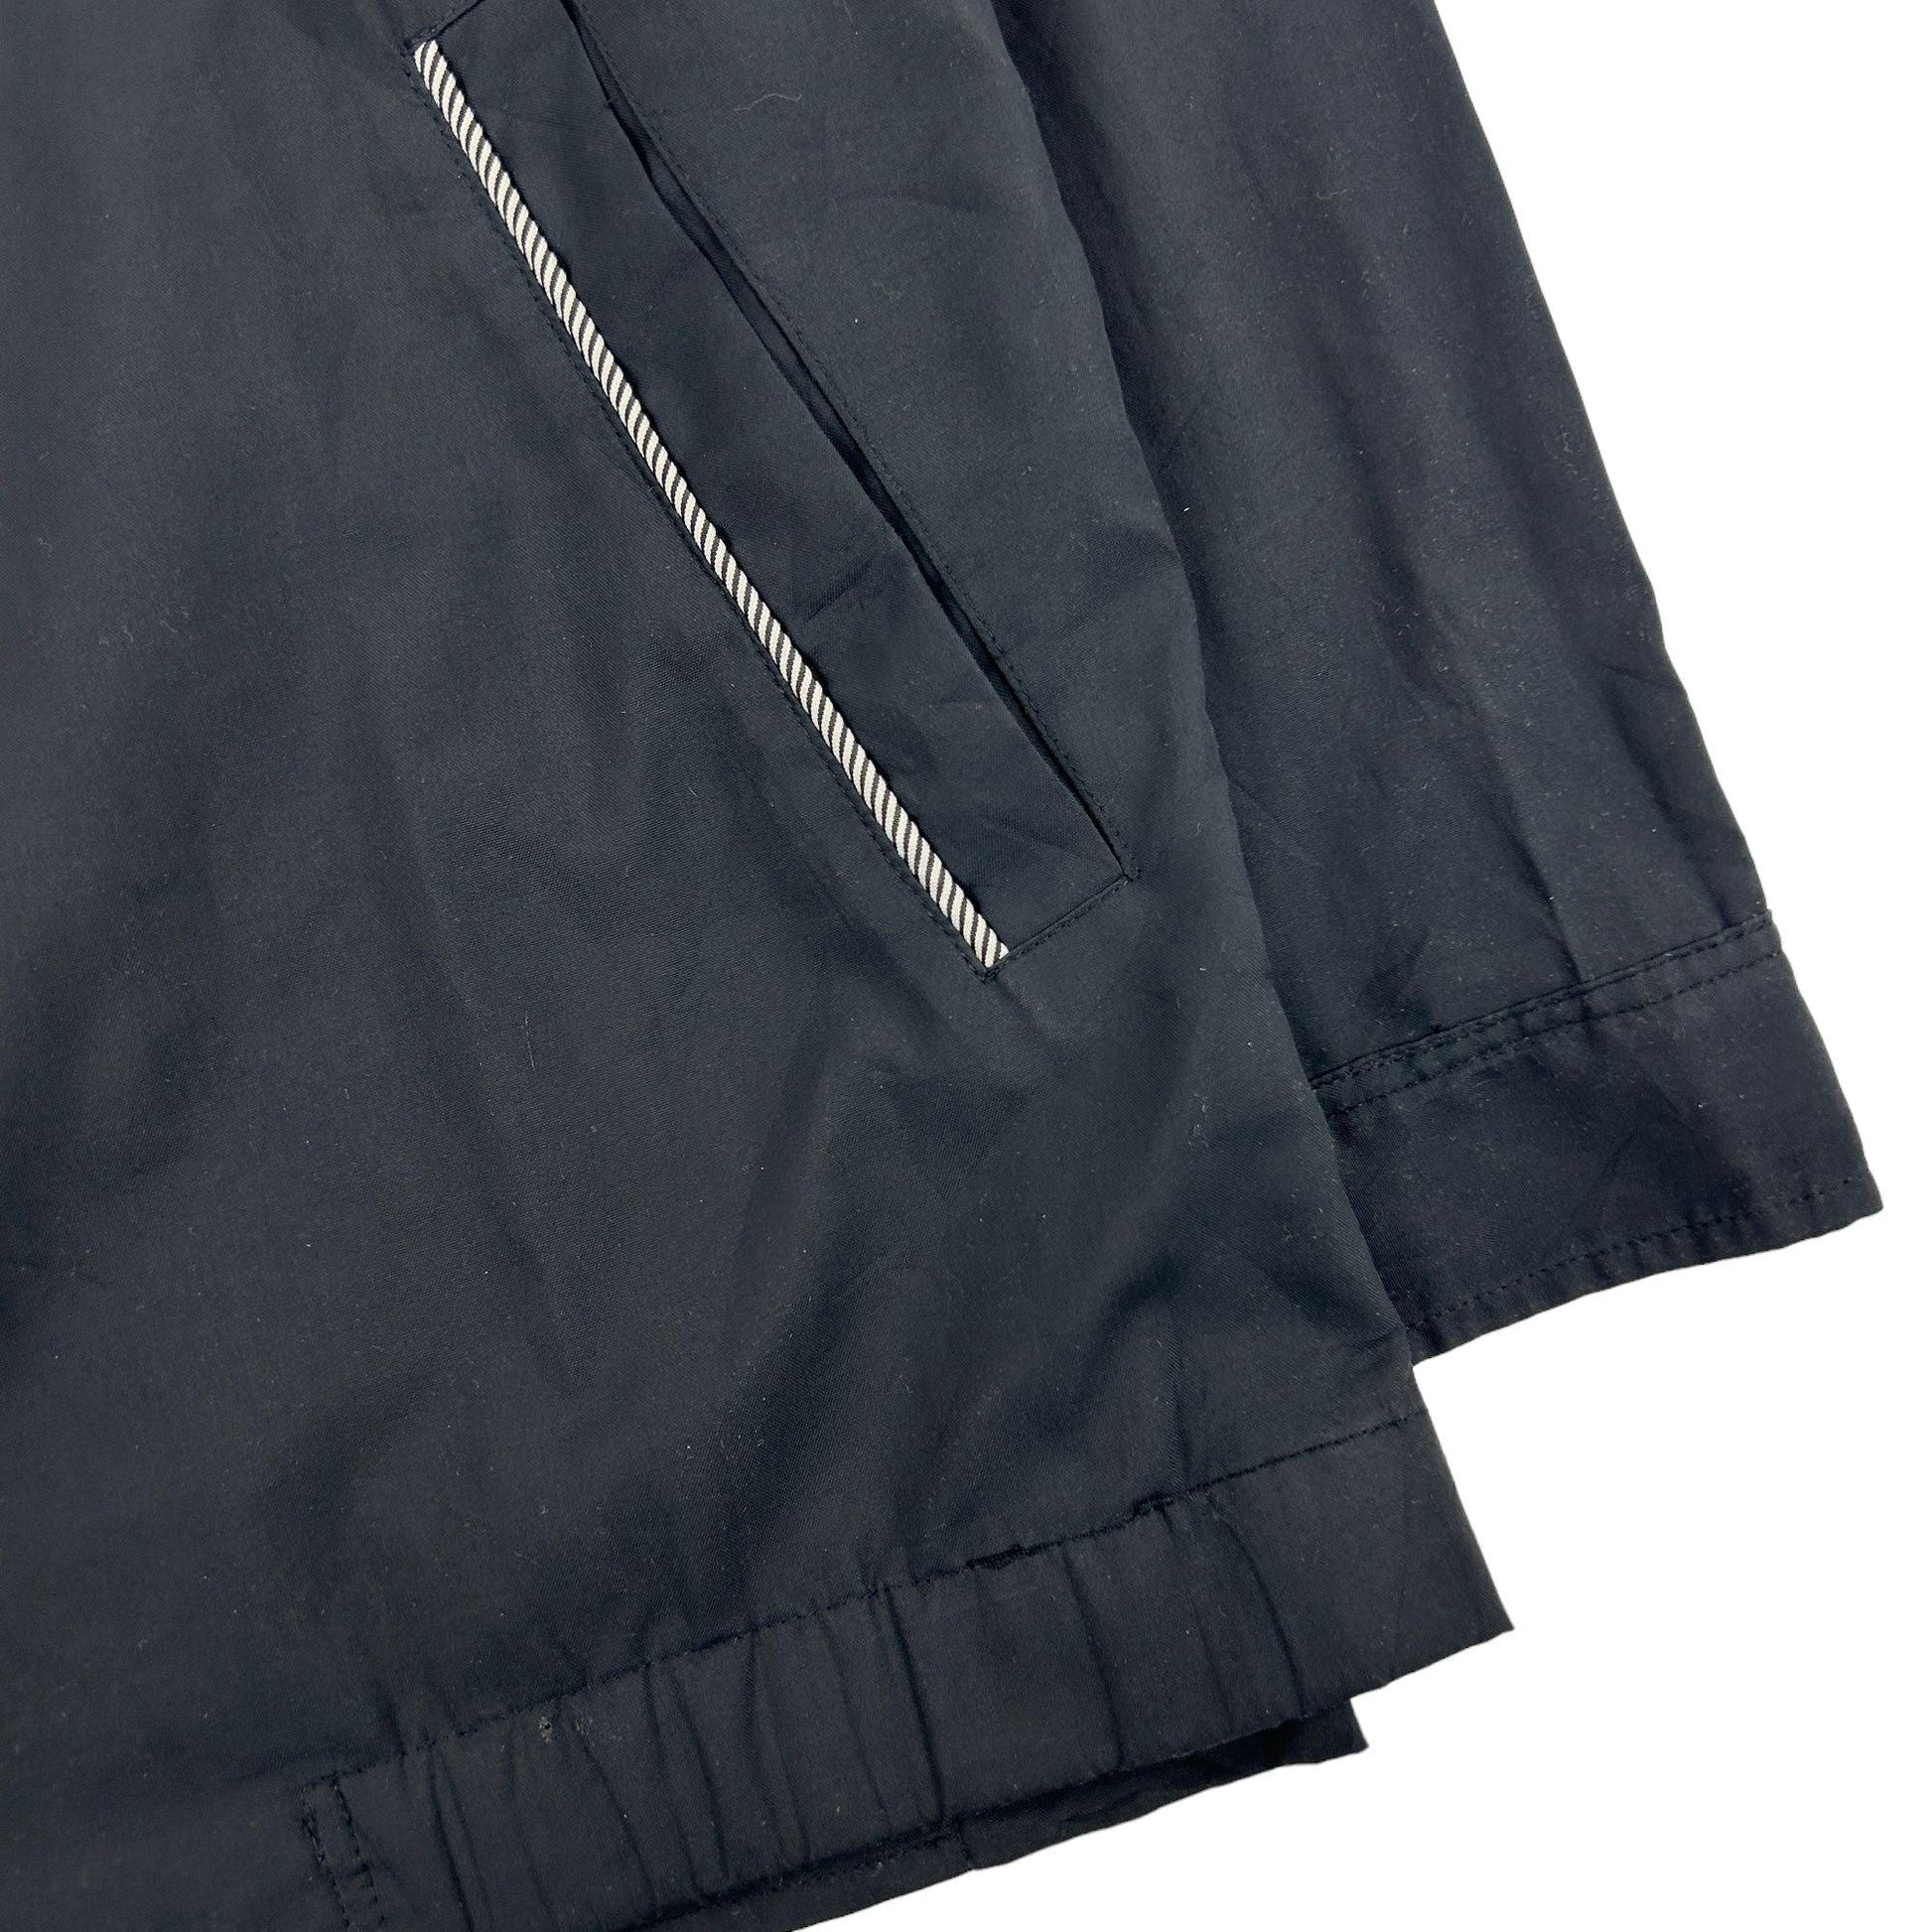 Vintage Yves Saint Laurent Jacket Size M - Known Source